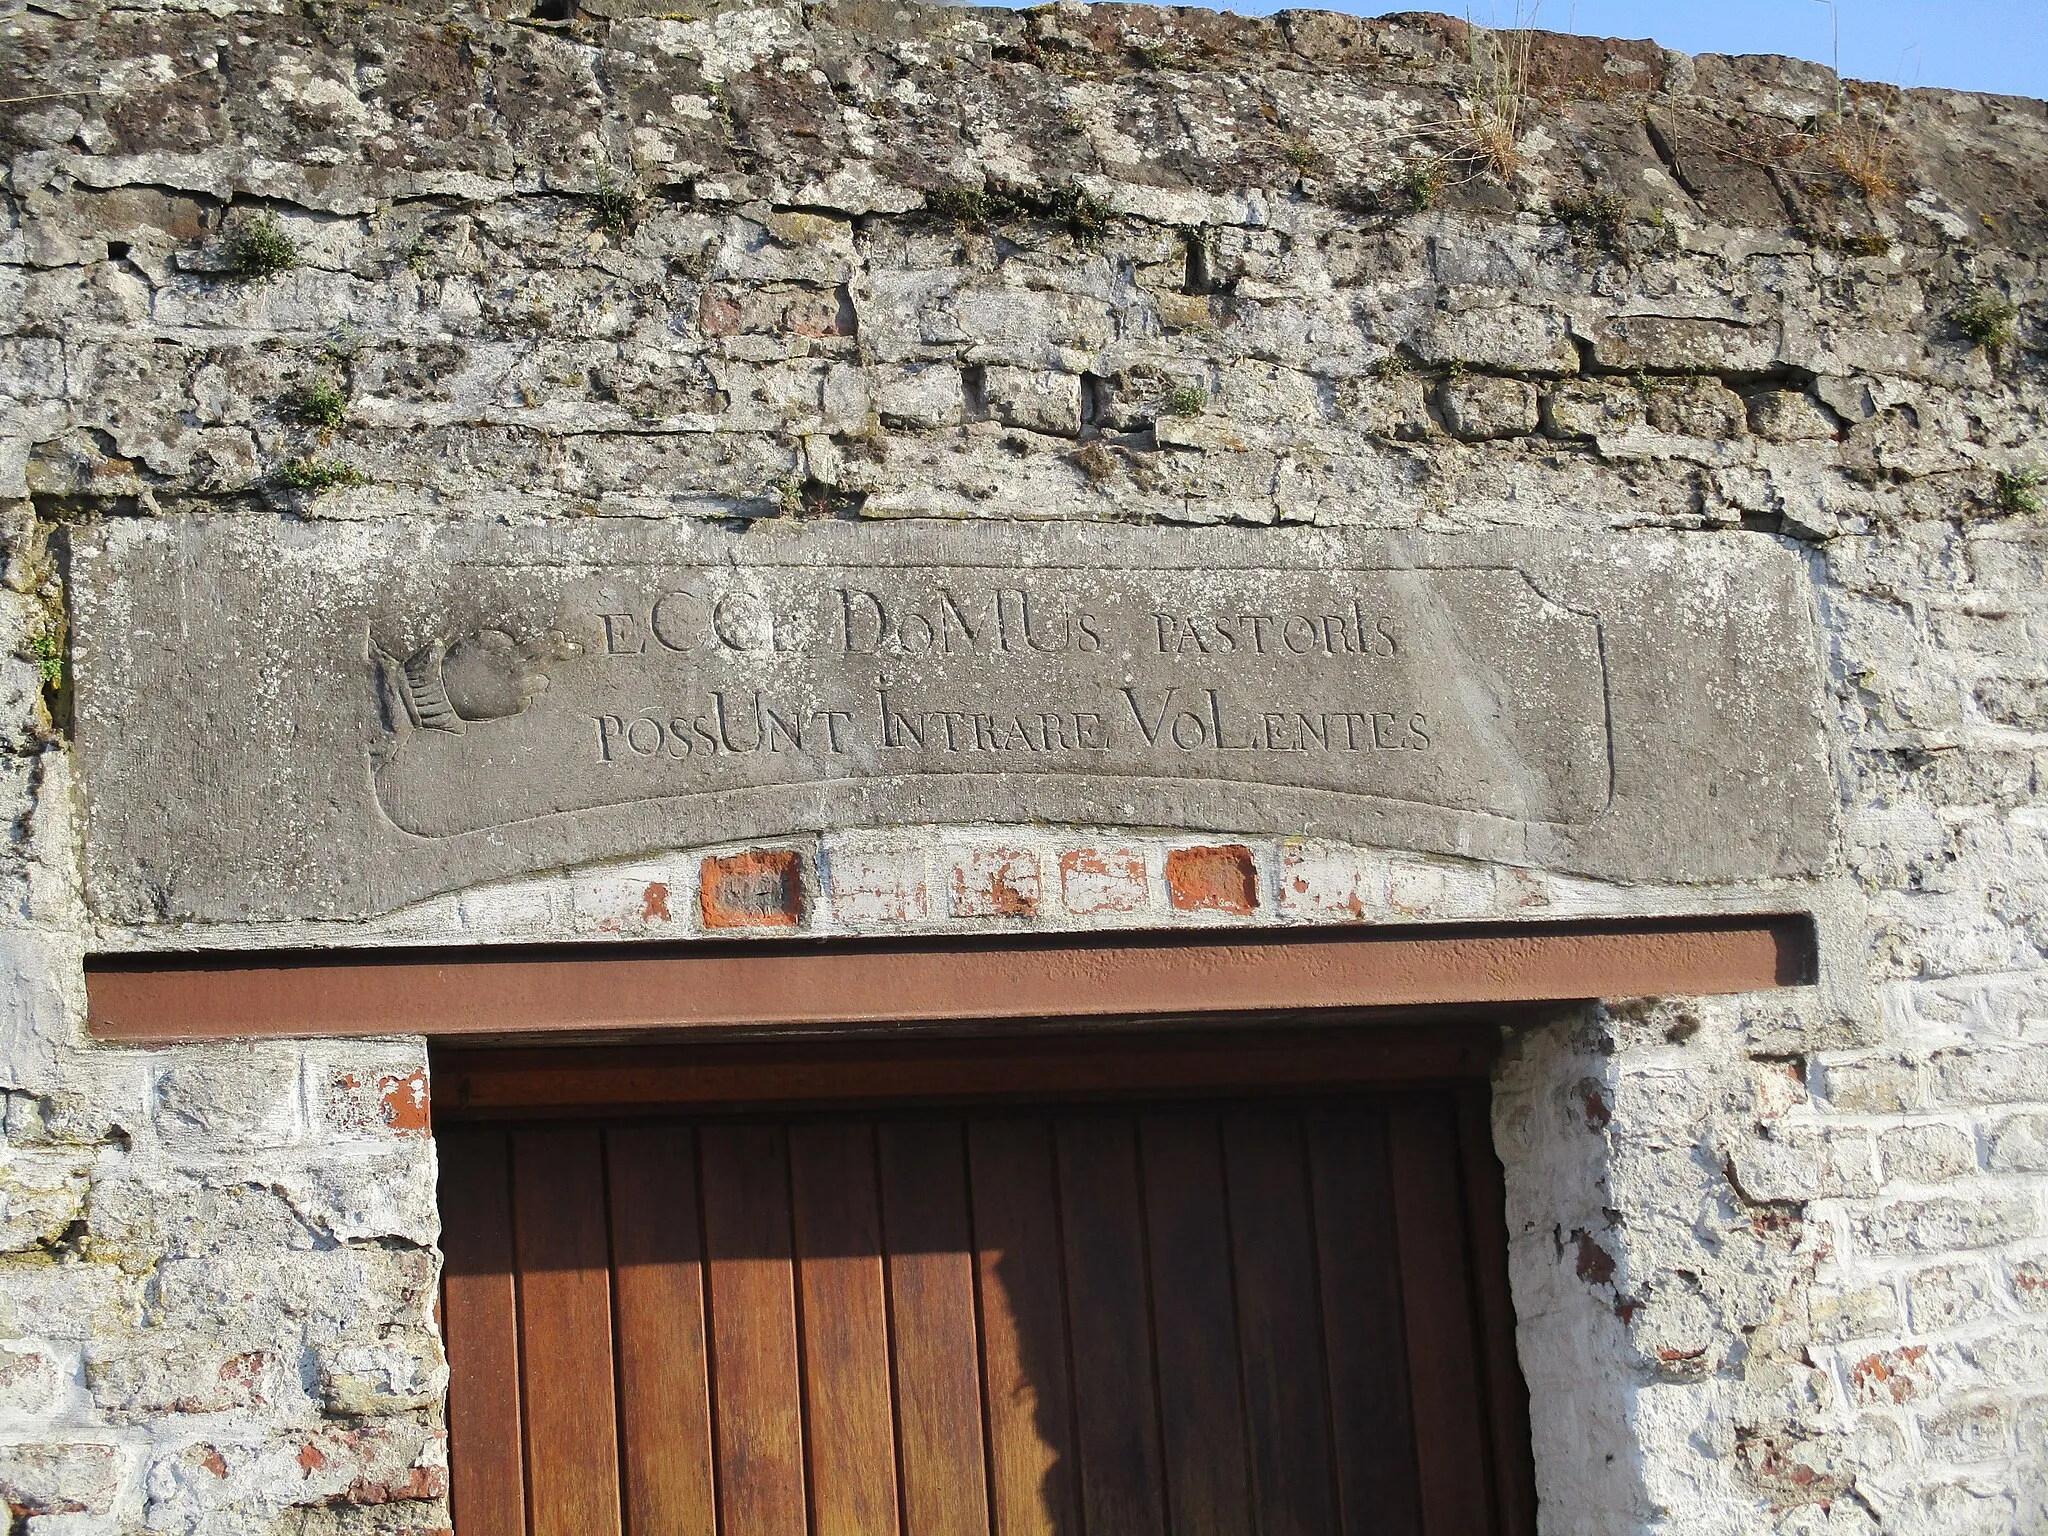 Photo showing: Steen boven ingang van pastorij van 1767 van Grand-Hallet (België) met tekst
"Ecce Domus pastoris possunt intrare volentis" (Hier kunt u het huis van de pastoor binnengaan)